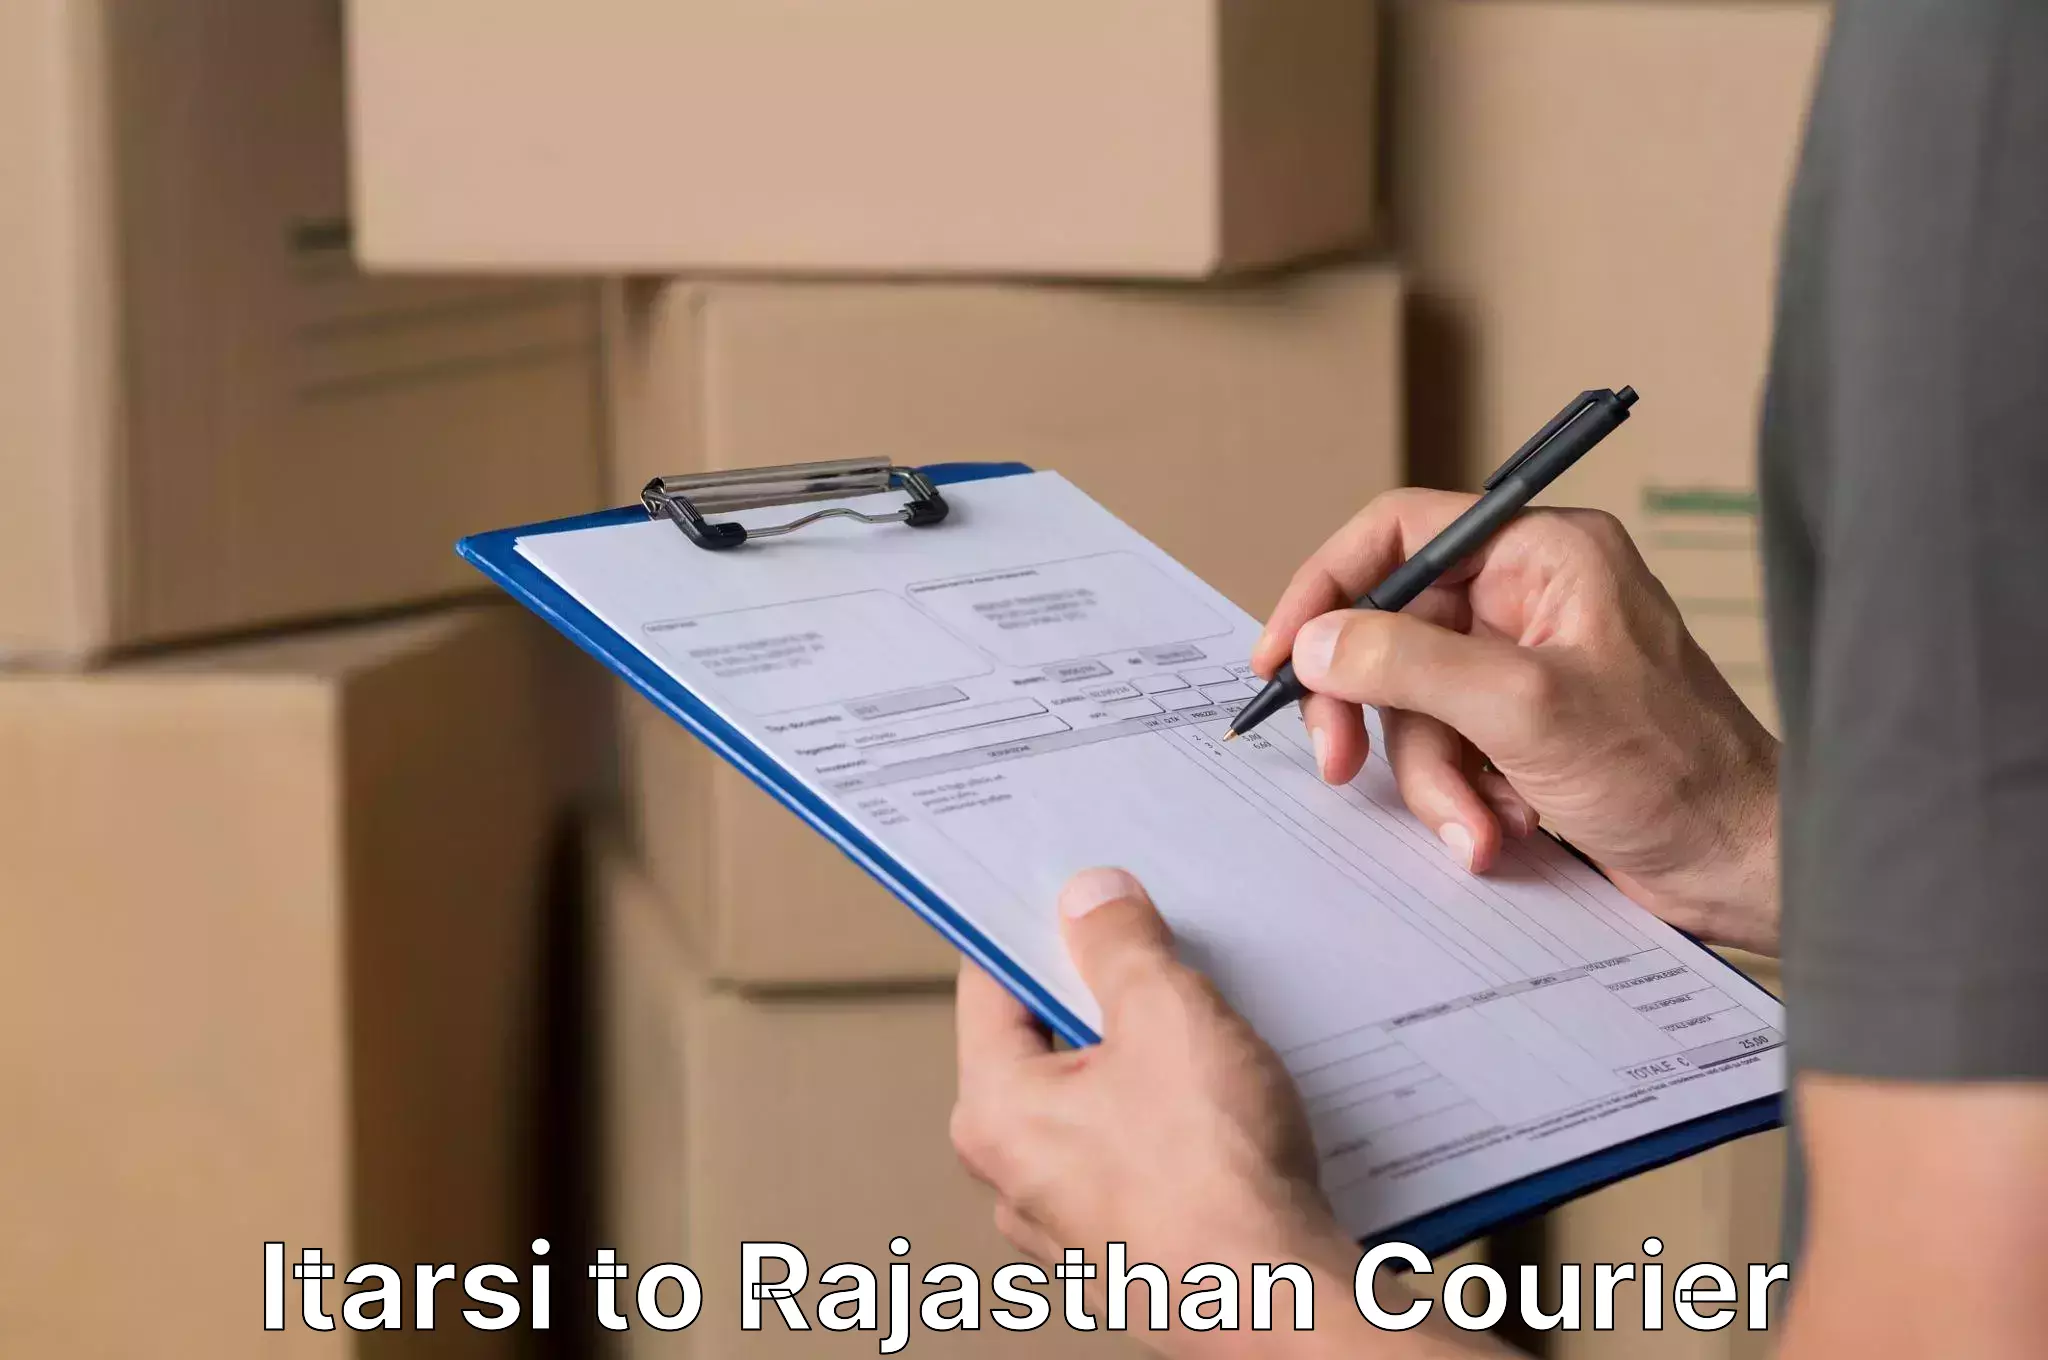 Trusted moving company Itarsi to Jaisalmer